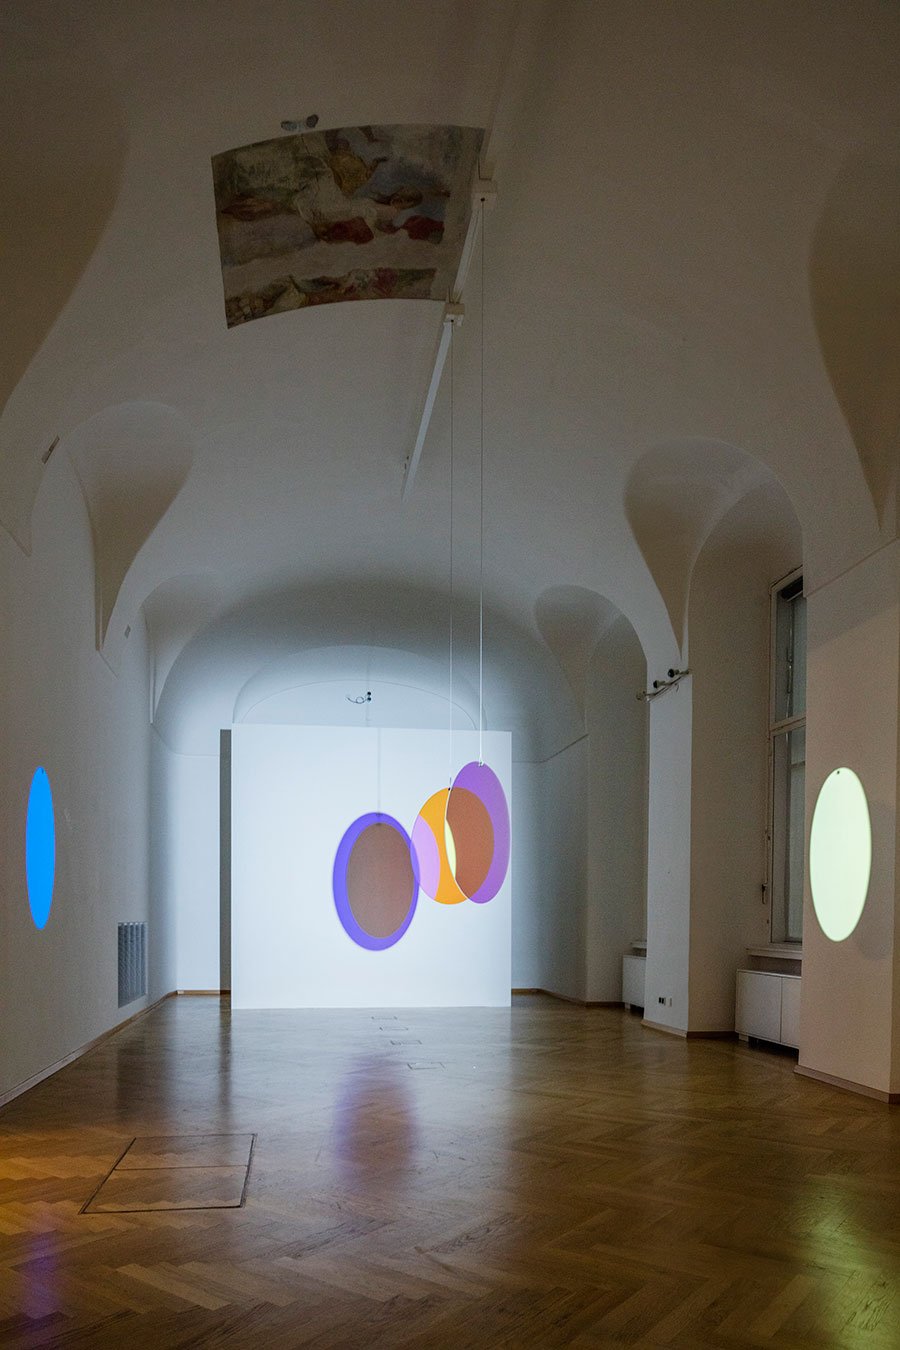 奥拉维尔·埃利亚松您的欢迎反射，20032 彩色效果滤光玻璃（蓝色、红色）、电机、HMI 灯、三脚架 ø 75 厘米萨沃伊王子尤金的冬宫，维也纳 2015 照片由安德斯·苏恩·伯格提供，由蒂森-博内米萨当代艺术收藏馆提供，维也纳©奥拉维尔·埃利亚松。